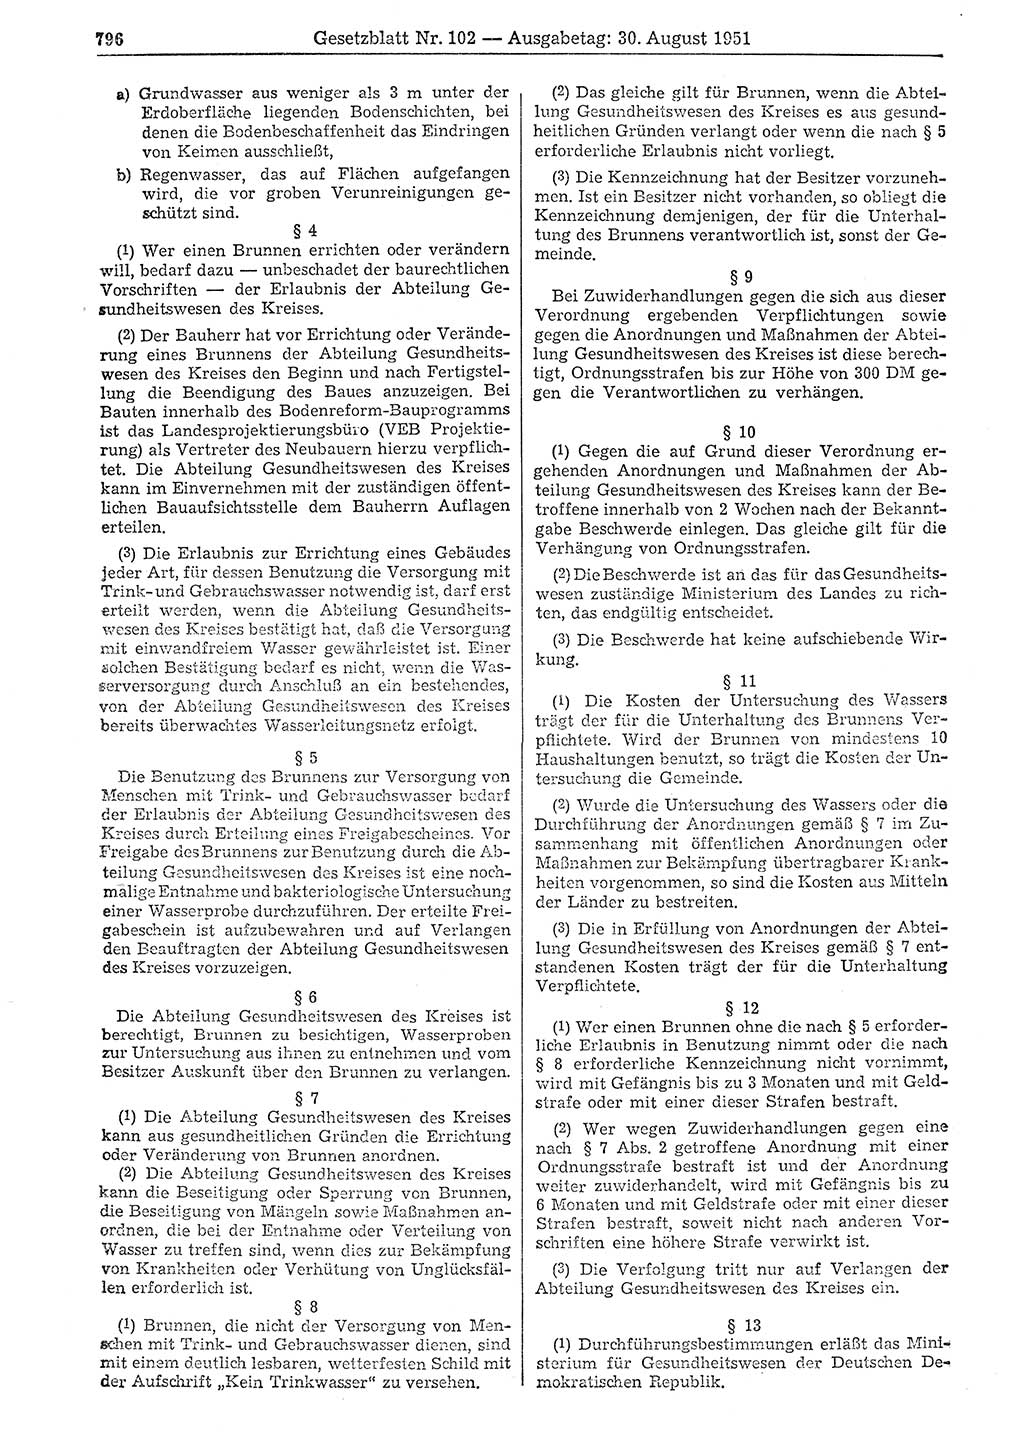 Gesetzblatt (GBl.) der Deutschen Demokratischen Republik (DDR) 1951, Seite 796 (GBl. DDR 1951, S. 796)